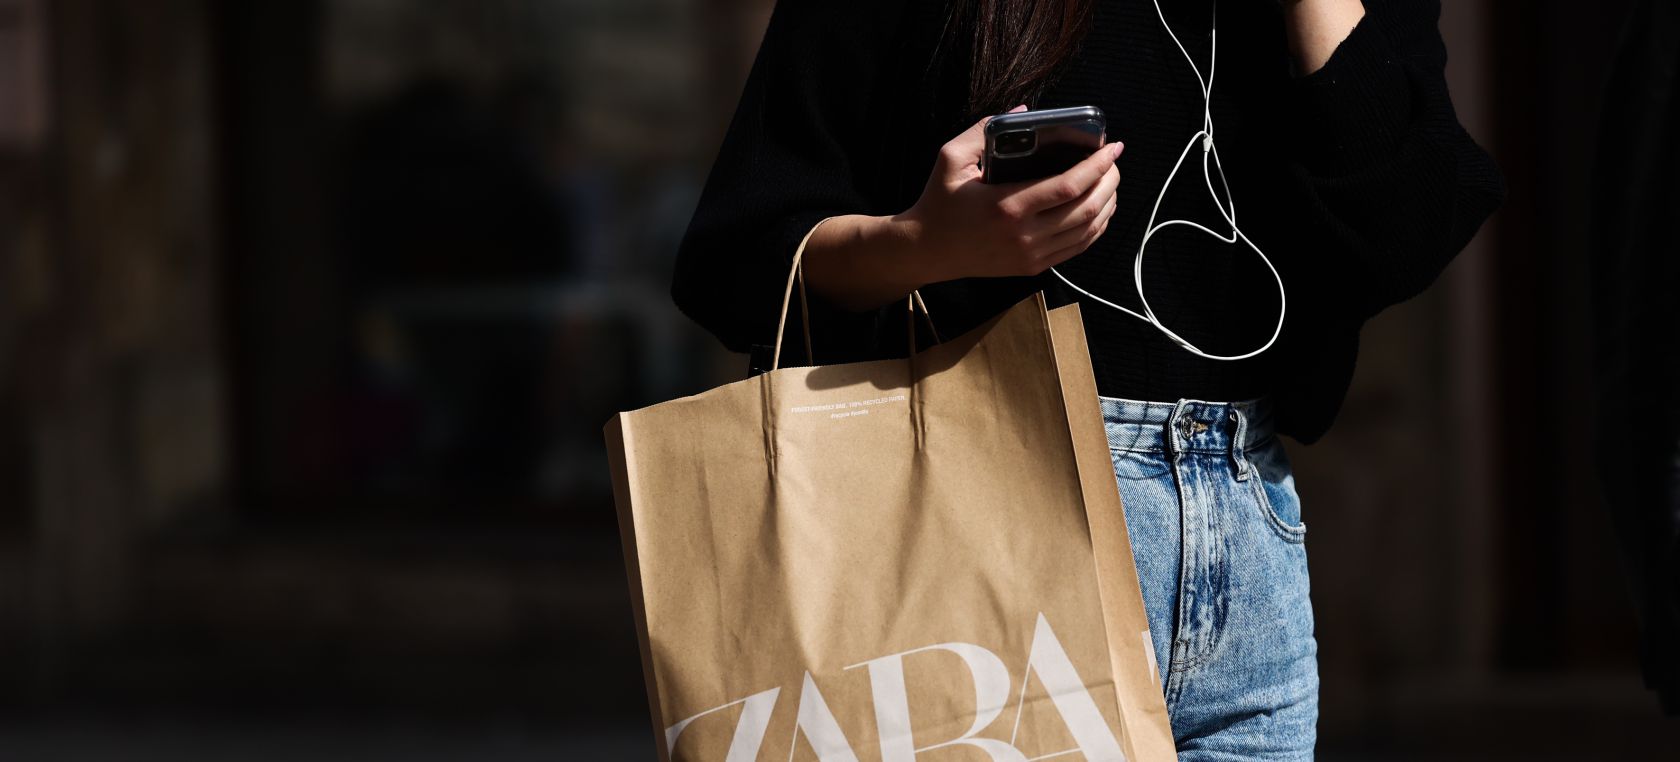 El producto que ha añadido Zara a su colección que no tiene nada que ver con la ropa